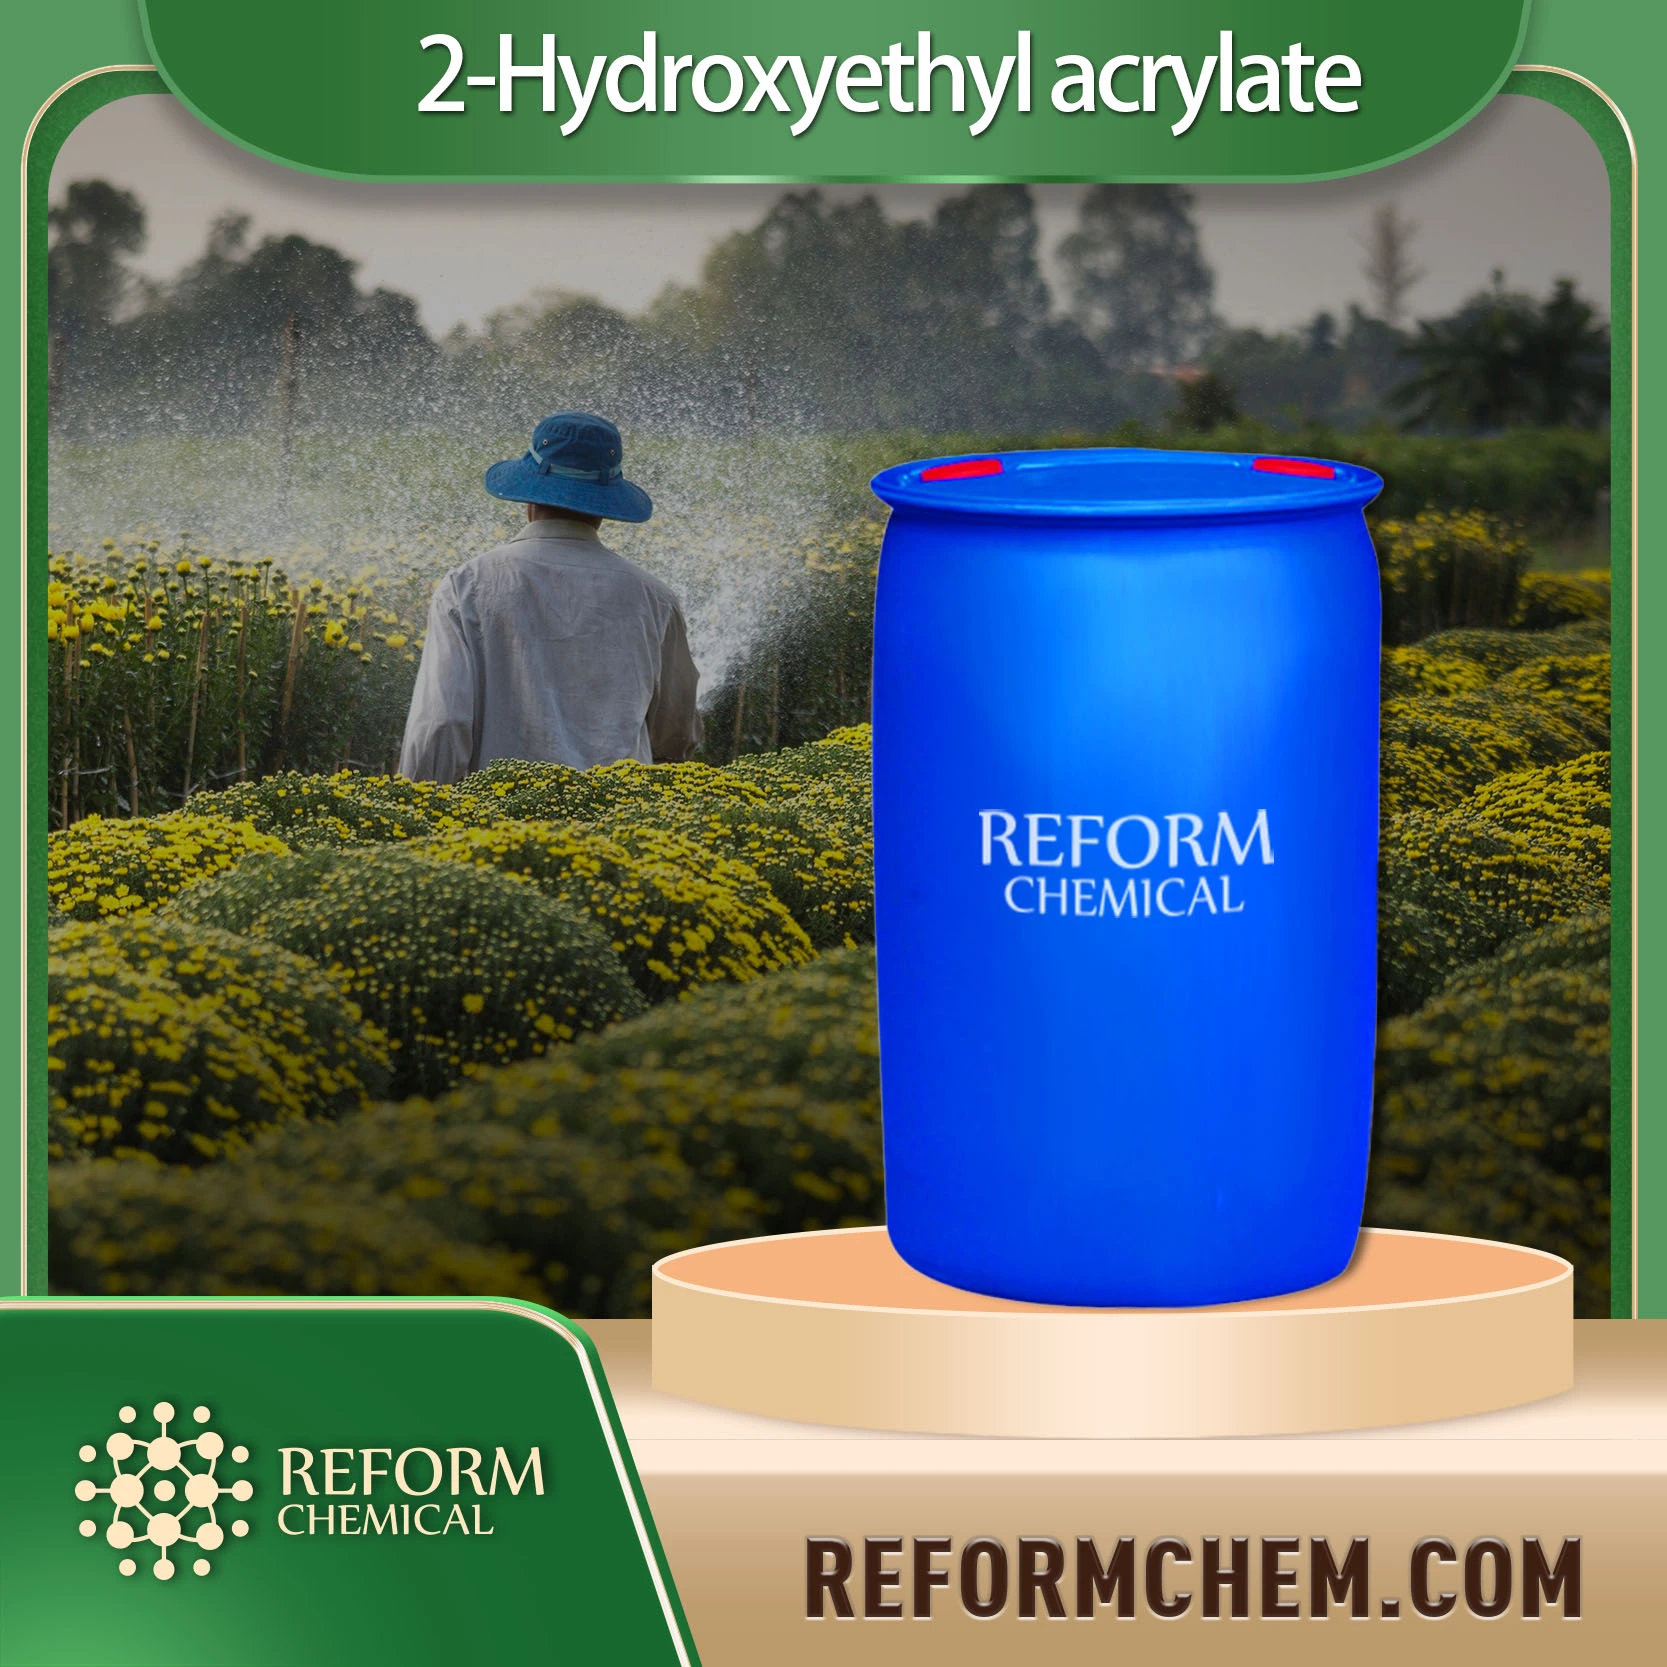 2 hydroxyethyl acrylate